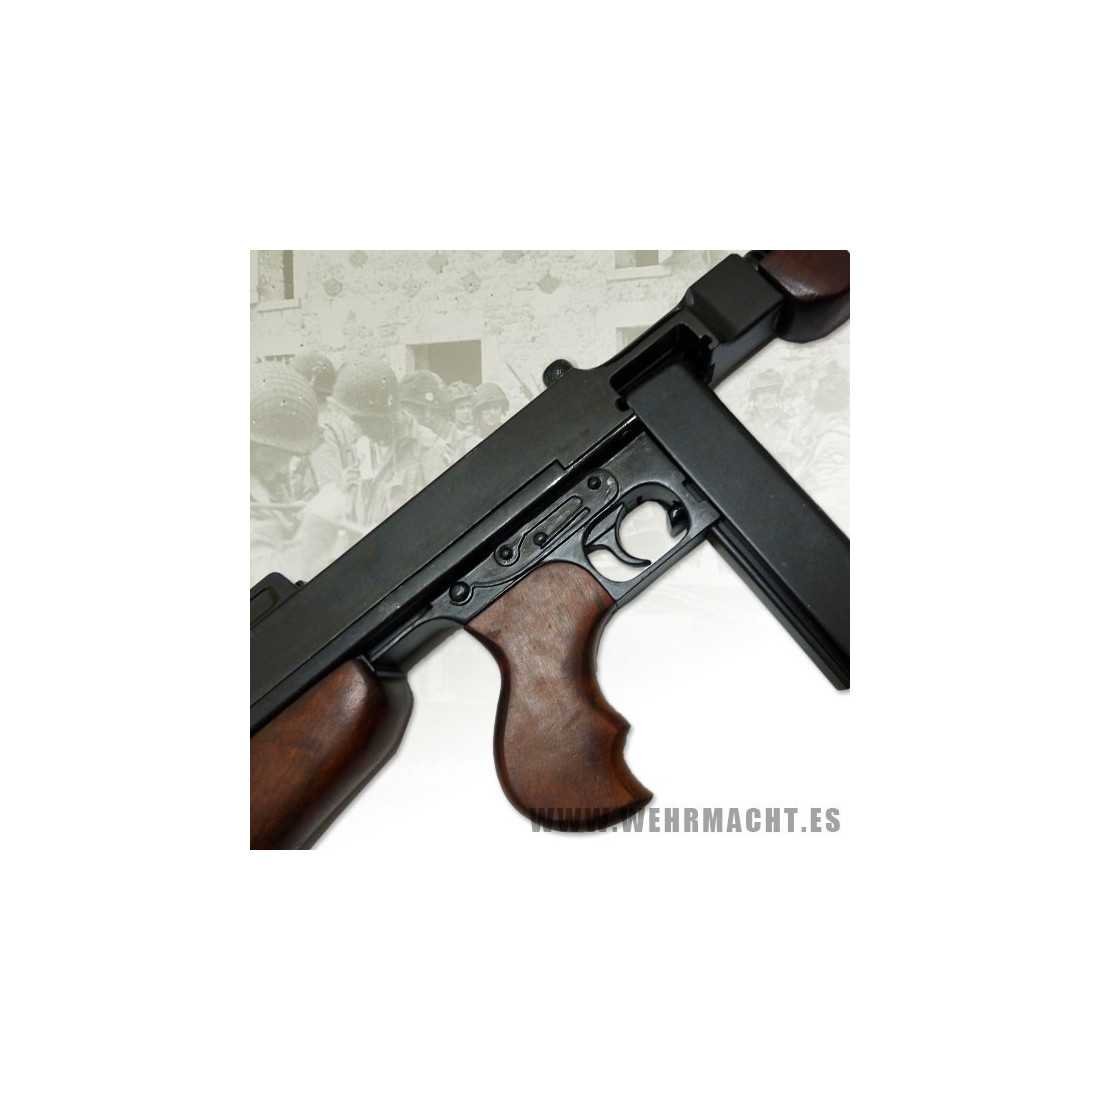 Thompson M1928 A1 - Pistolet-mitrailleur - Réplique - Denix